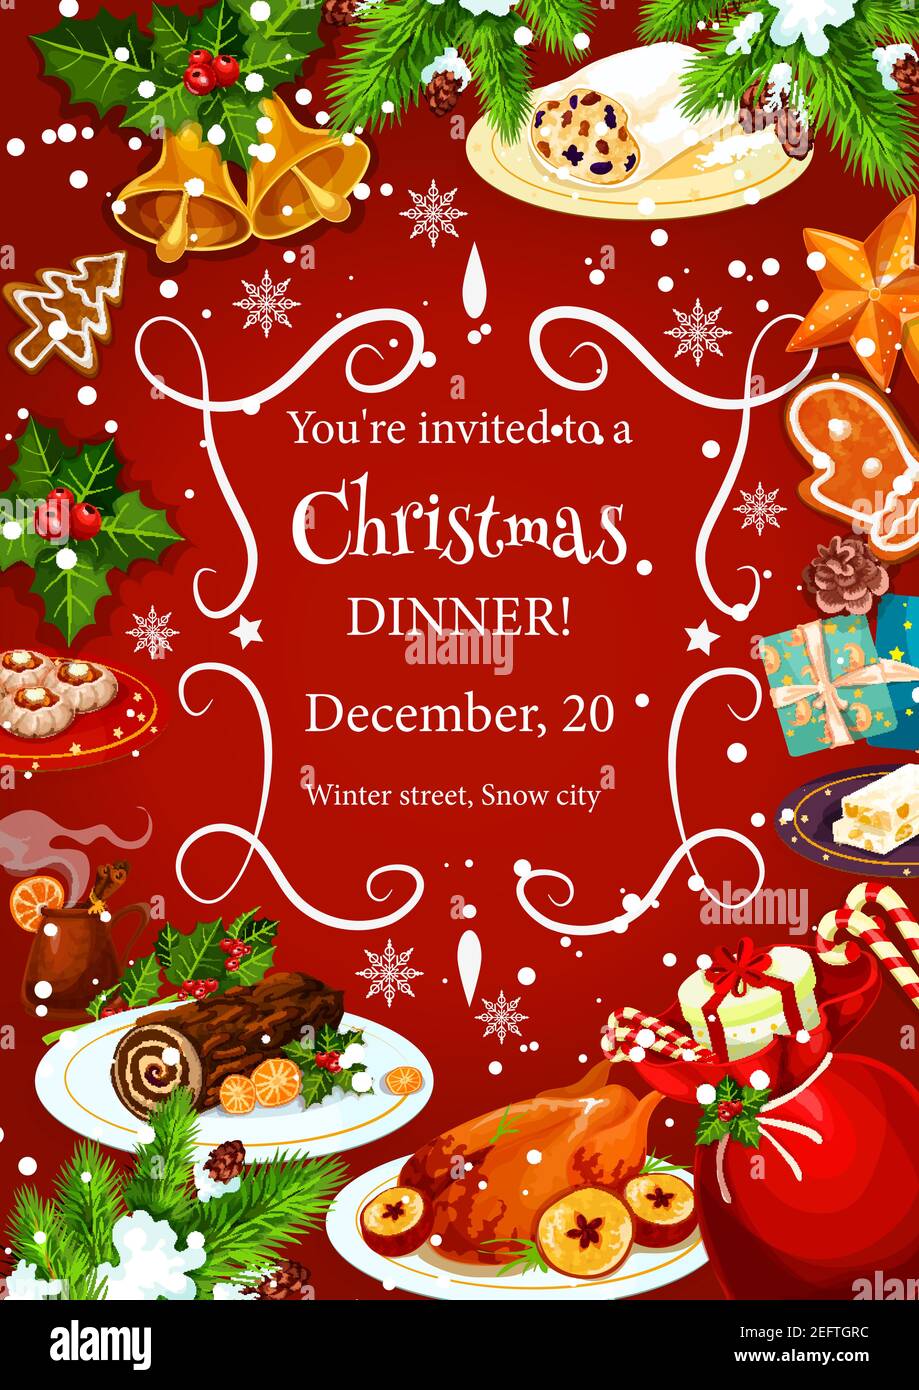 Weihnachtsfeiertag Dinner Einladung Poster Vorlage mit Rahmen von festlichen Gerichten. Truthahn, Lebkuchen, Schokoladenkuchen und Glühwein Banner wi Stock Vektor